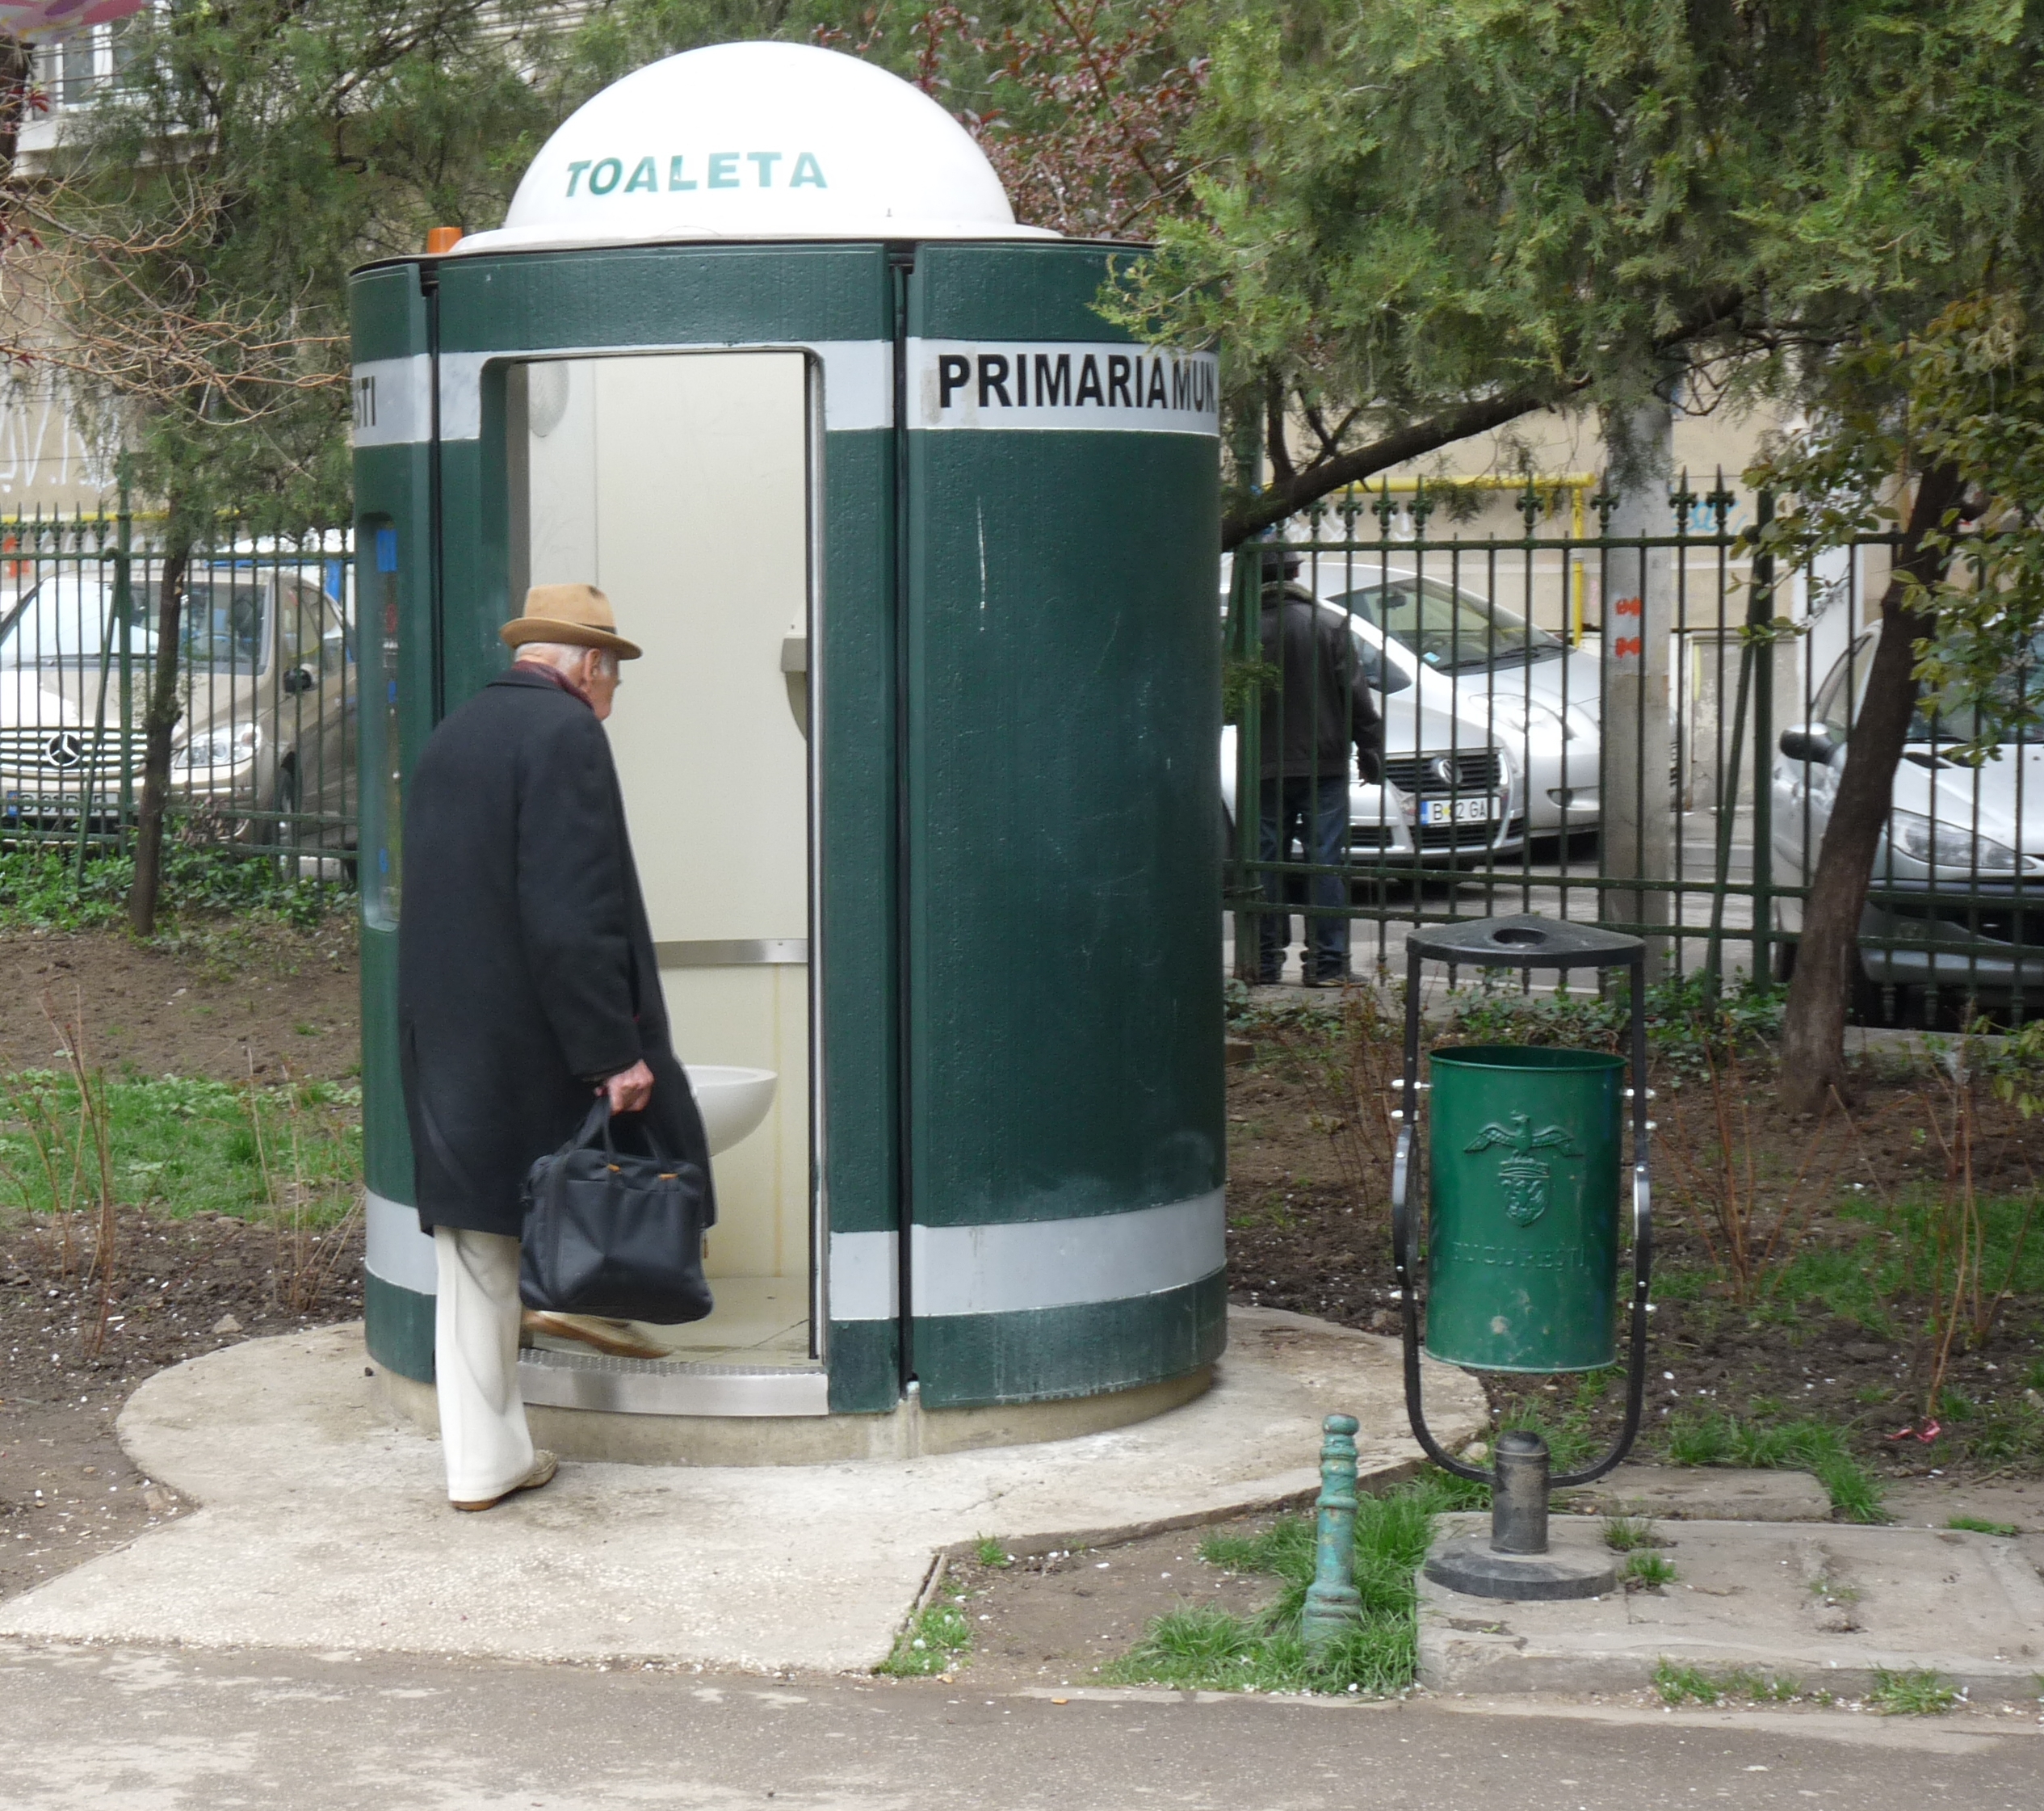 Cum a aruncat toaleta Primaria 40 de milioane de lei din banii bucurestenilor: studiu de caz cu o afacere urat mirositoare - HotNews.ro